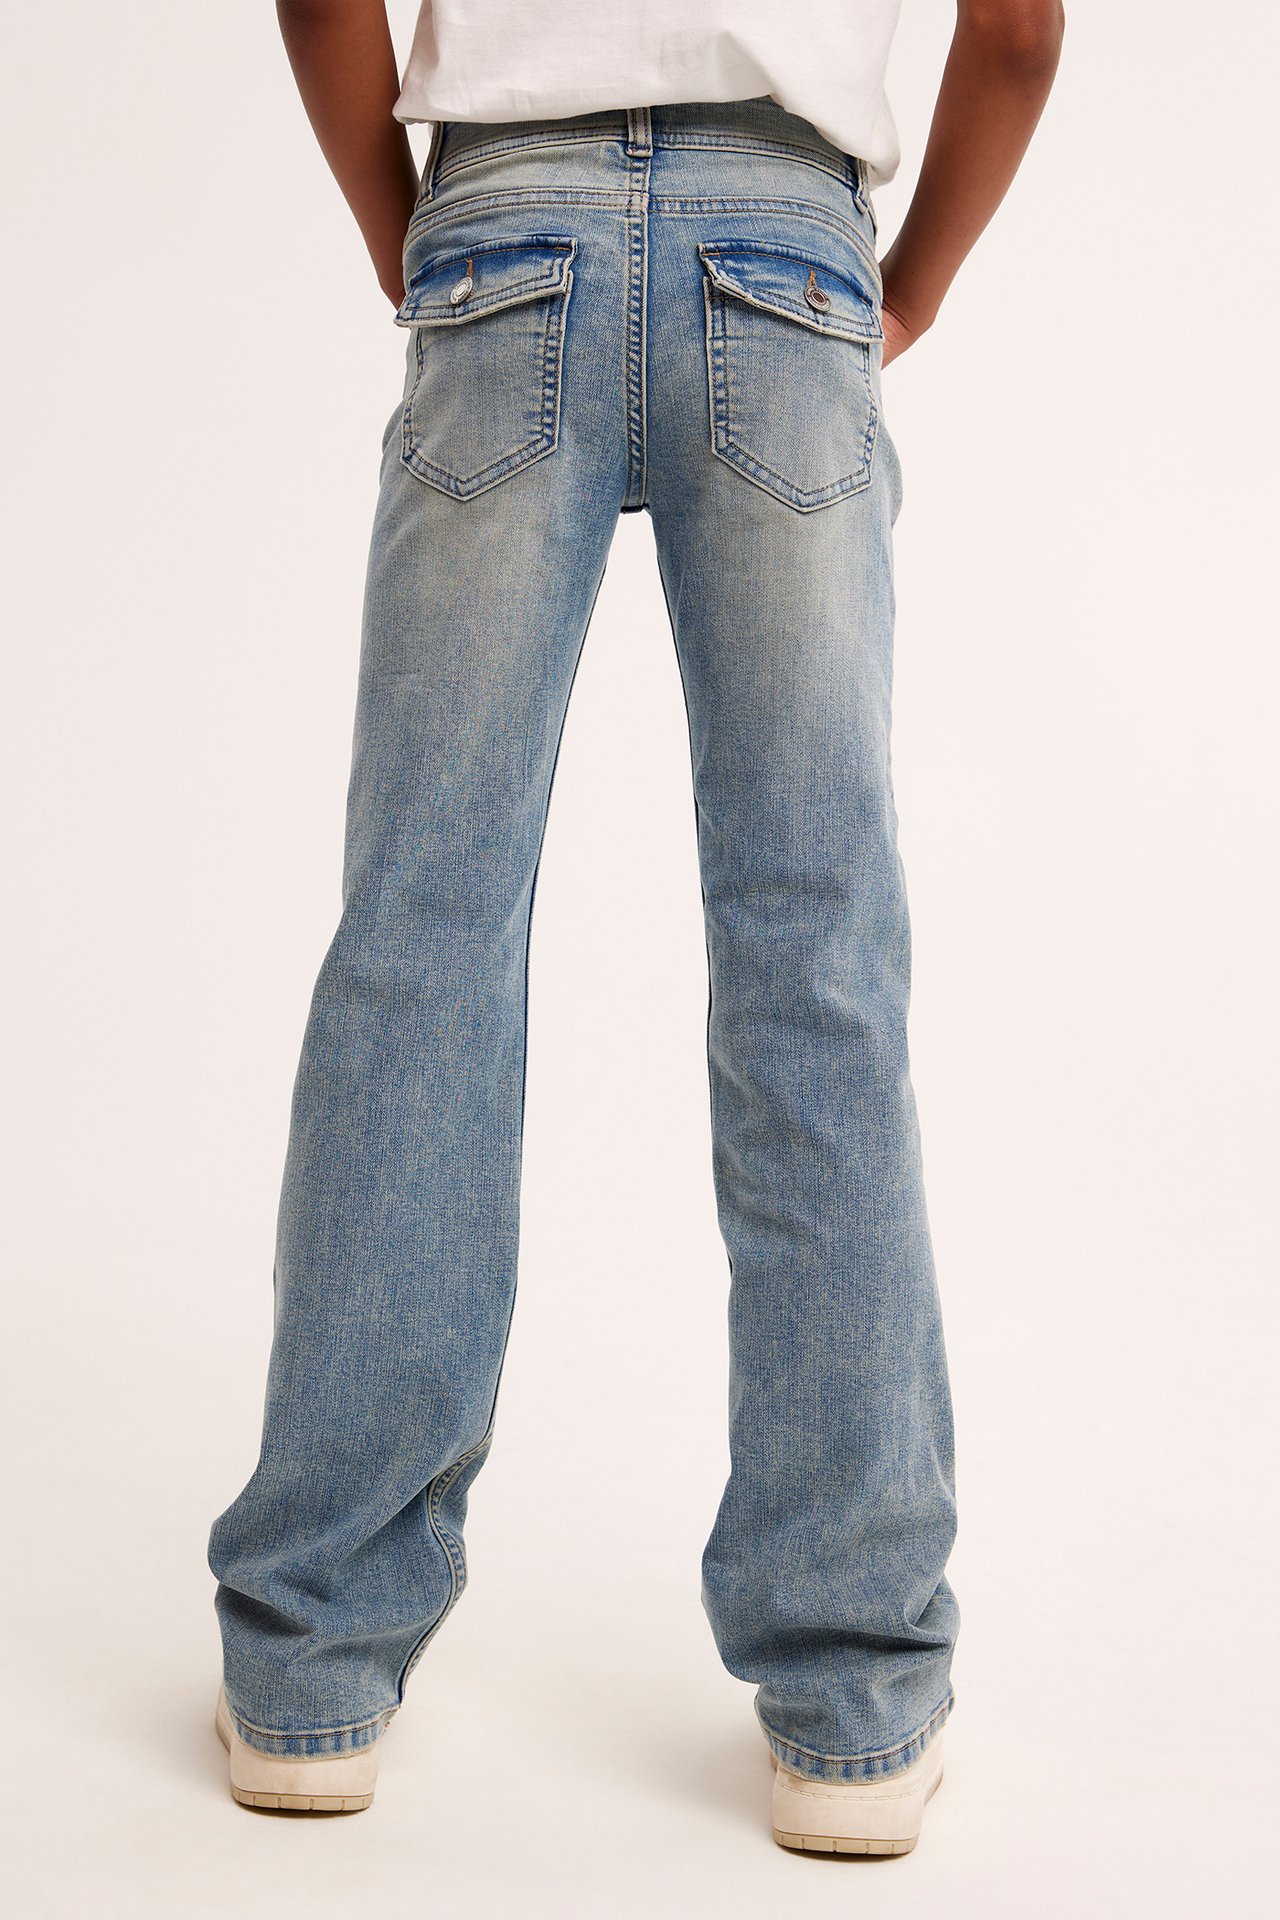 Dżinsy bootcut low waist - Jasny dżins - 5